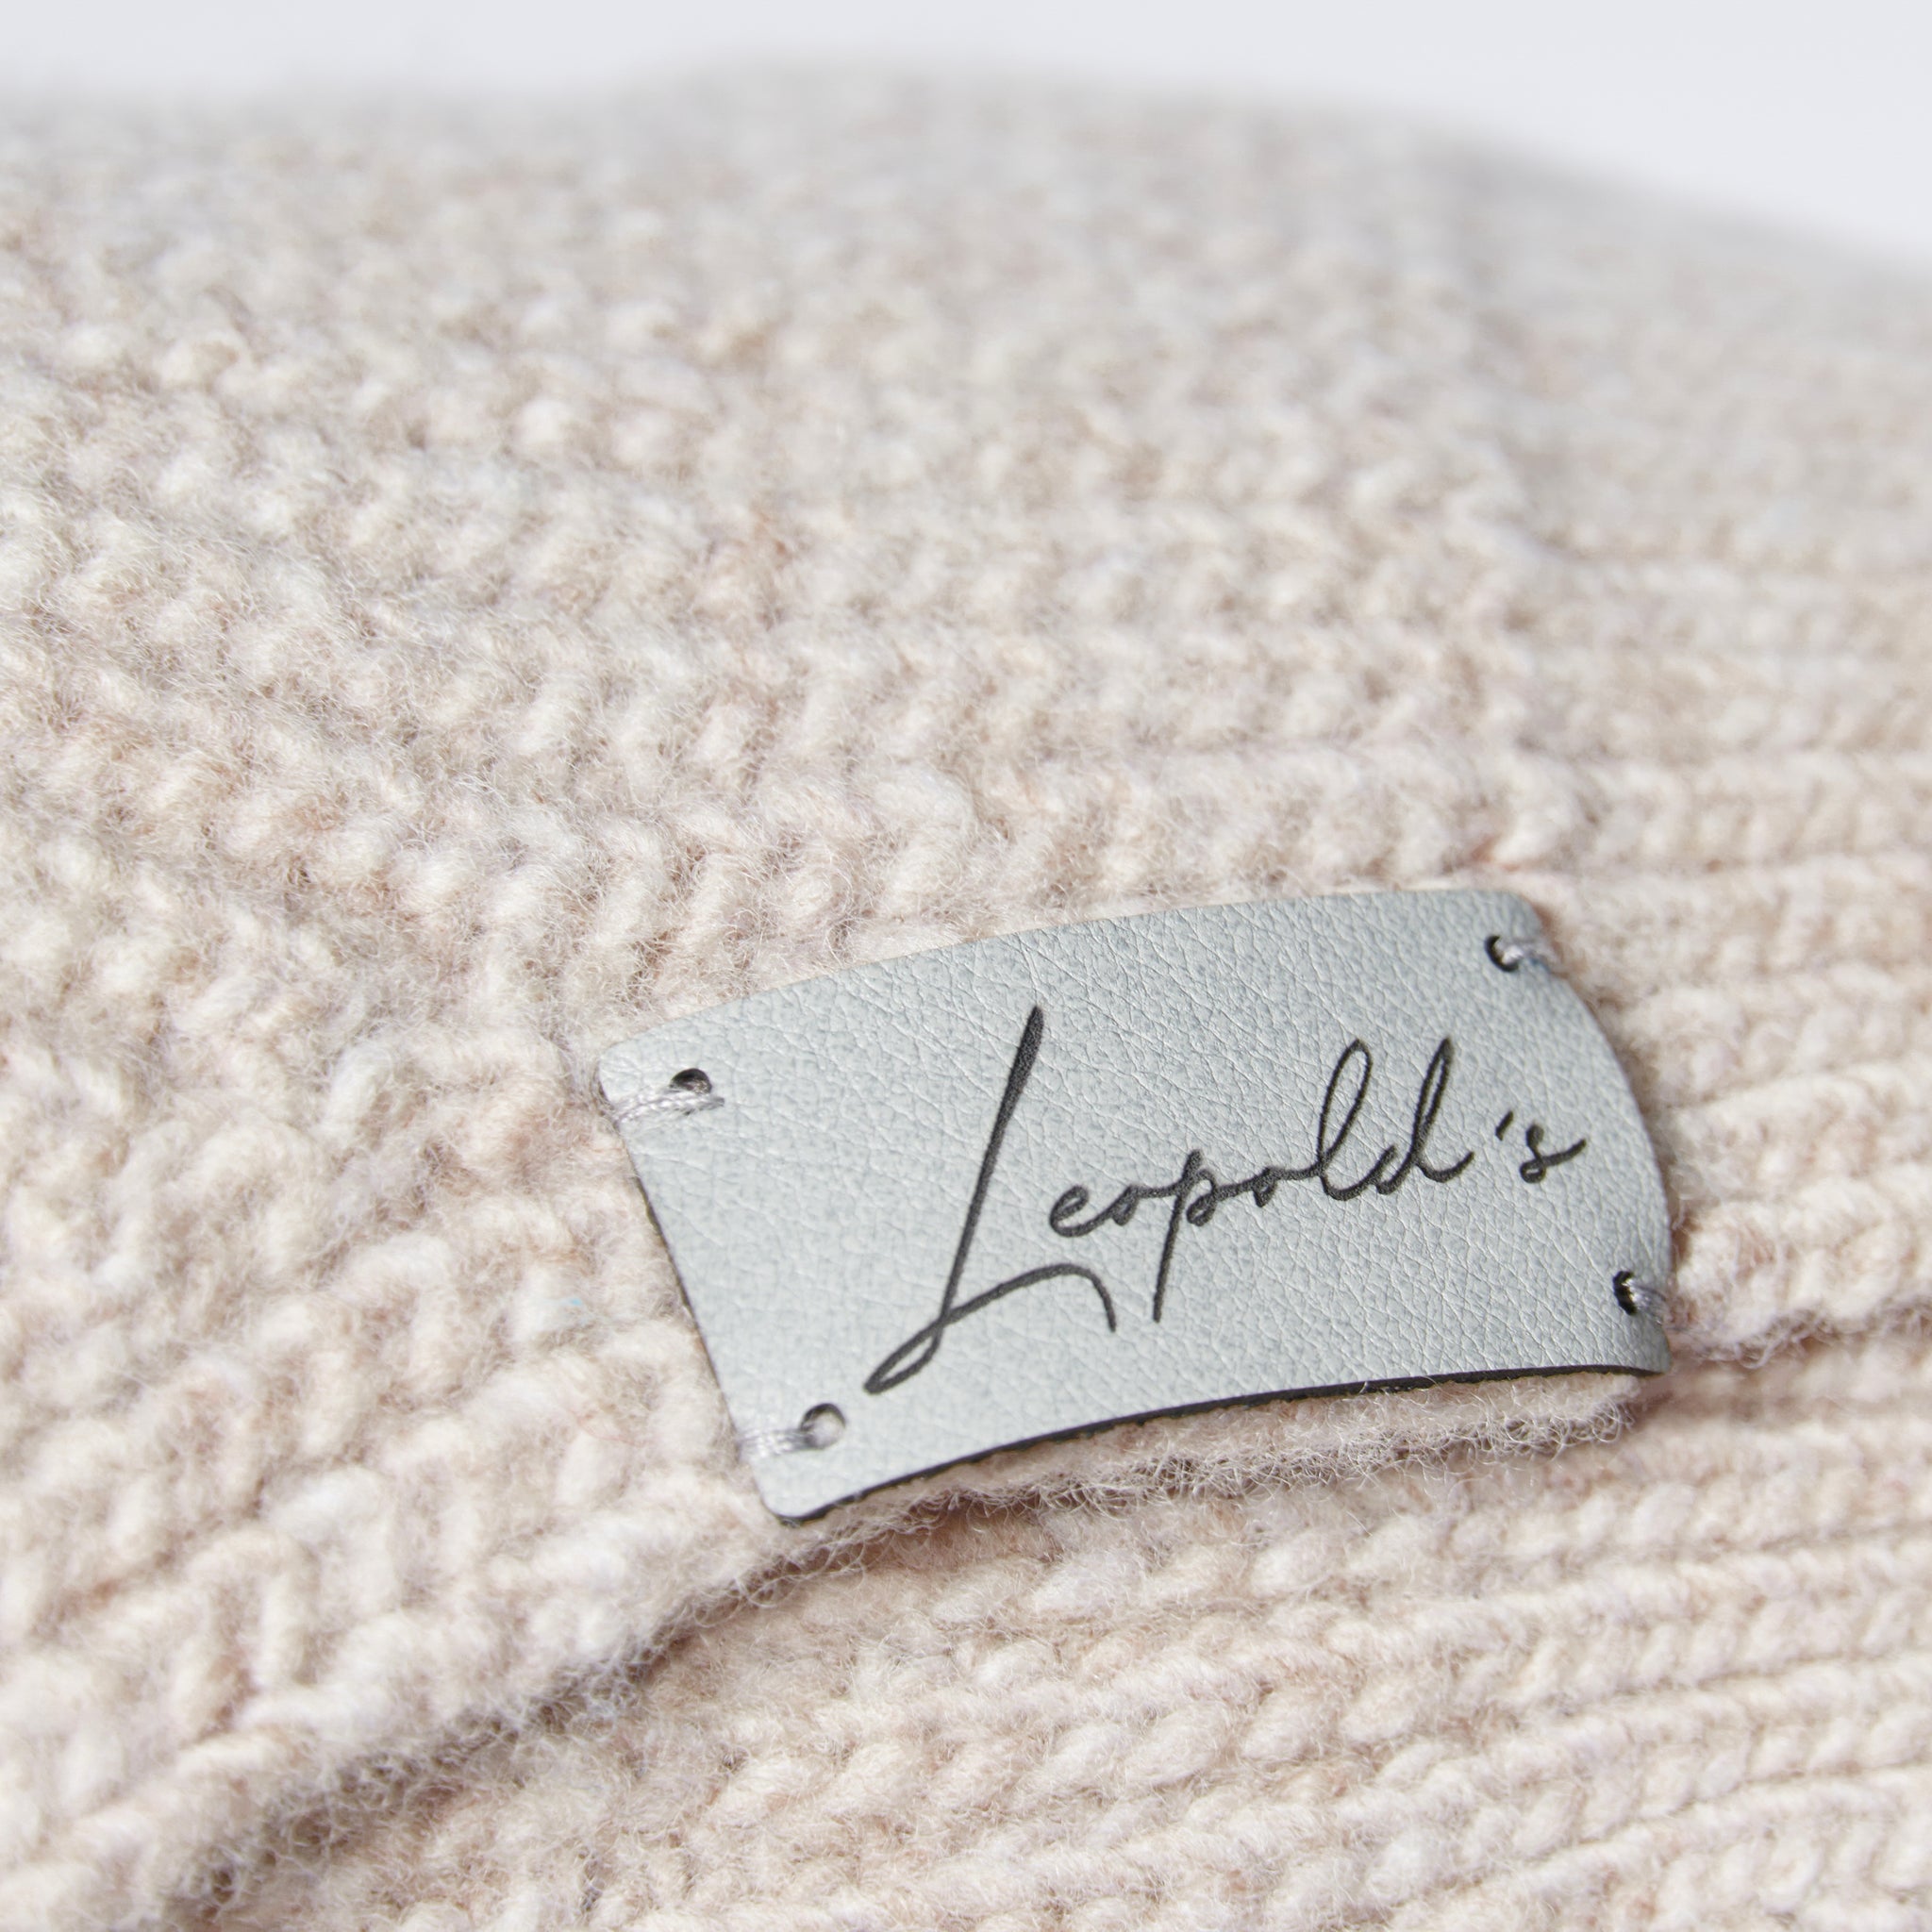 Hundepullover für Dackel Malteser & Zwergpudel     - von Leopold's kaufen bei leopolds-finest